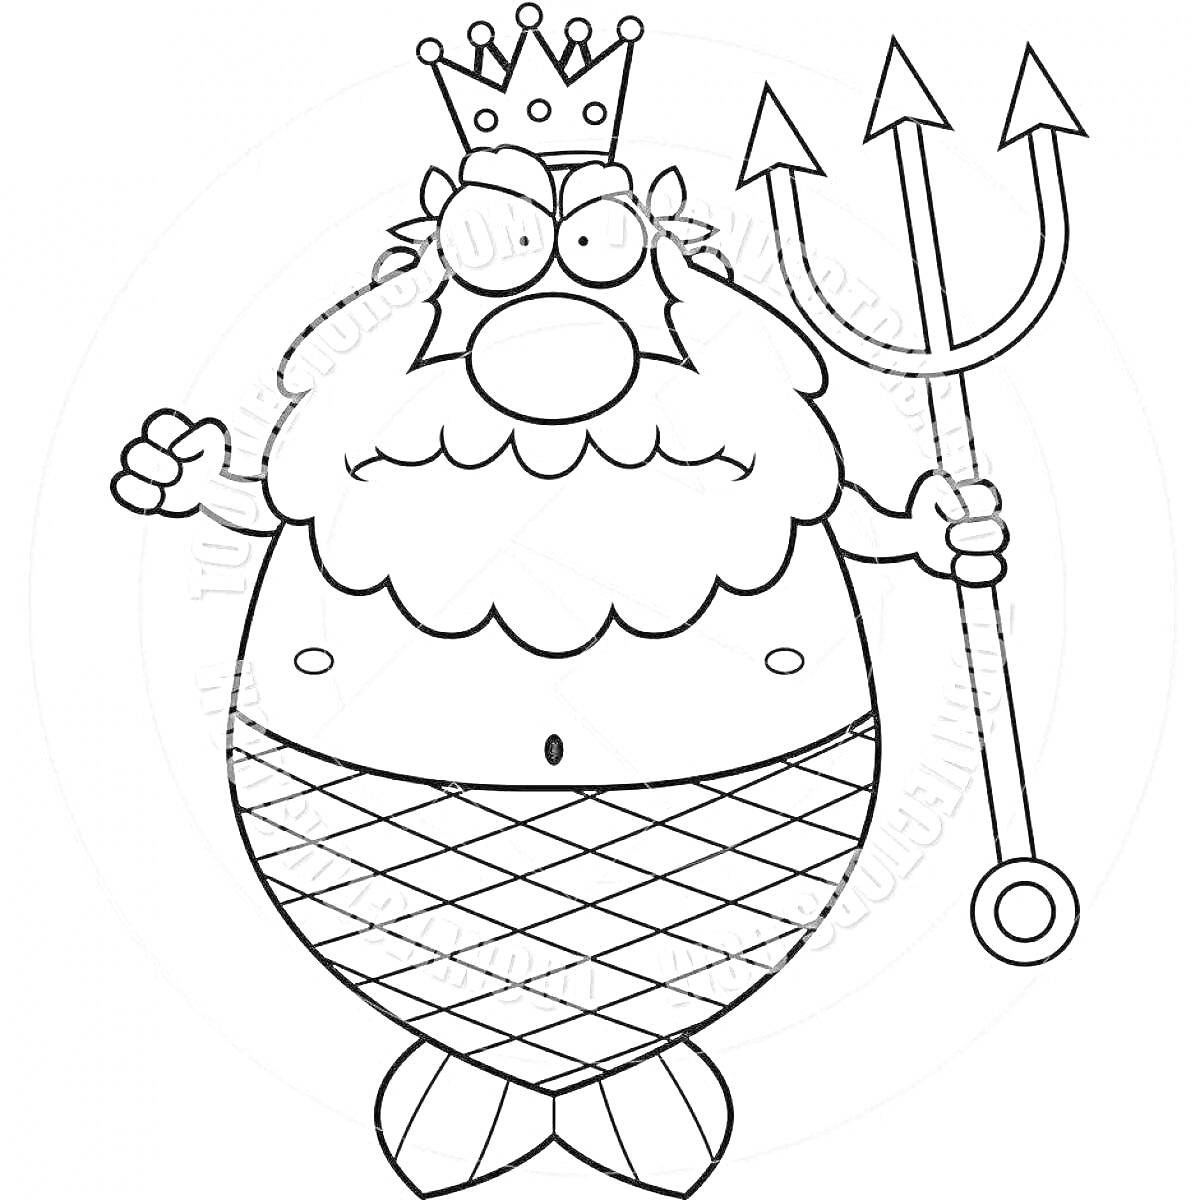 Раскраска Морской царь с трезубцем, короной и чешуйчатым хвостом